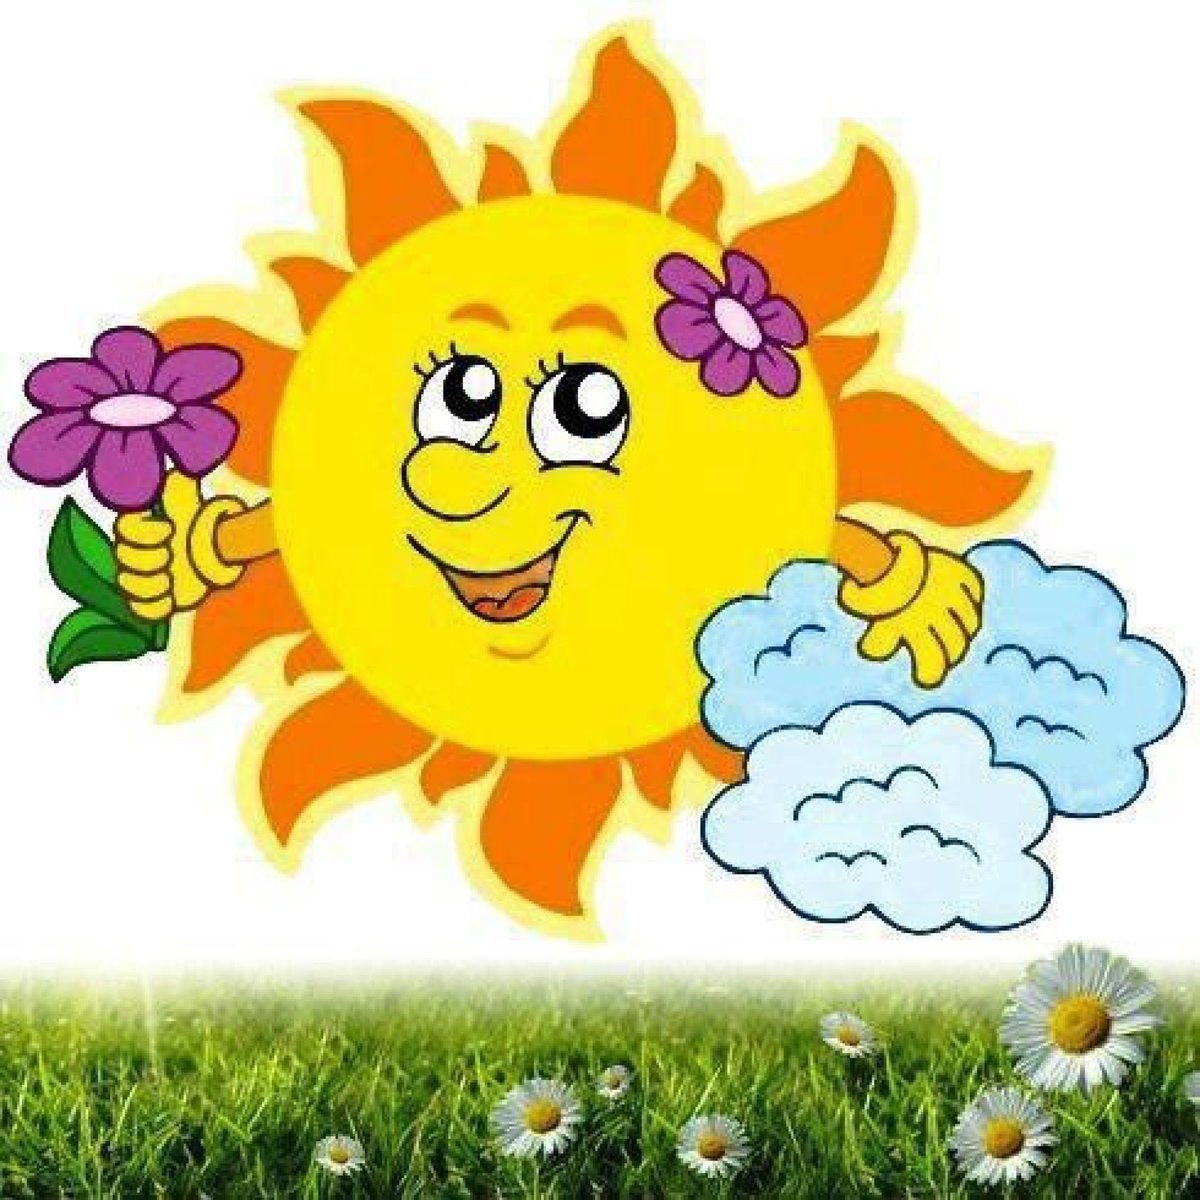 Это солнце это солнце замечательное солнце. Солнышко картинка. Солнце детские картинки. Красивое солнышко. Солнышко рисунок для детей.